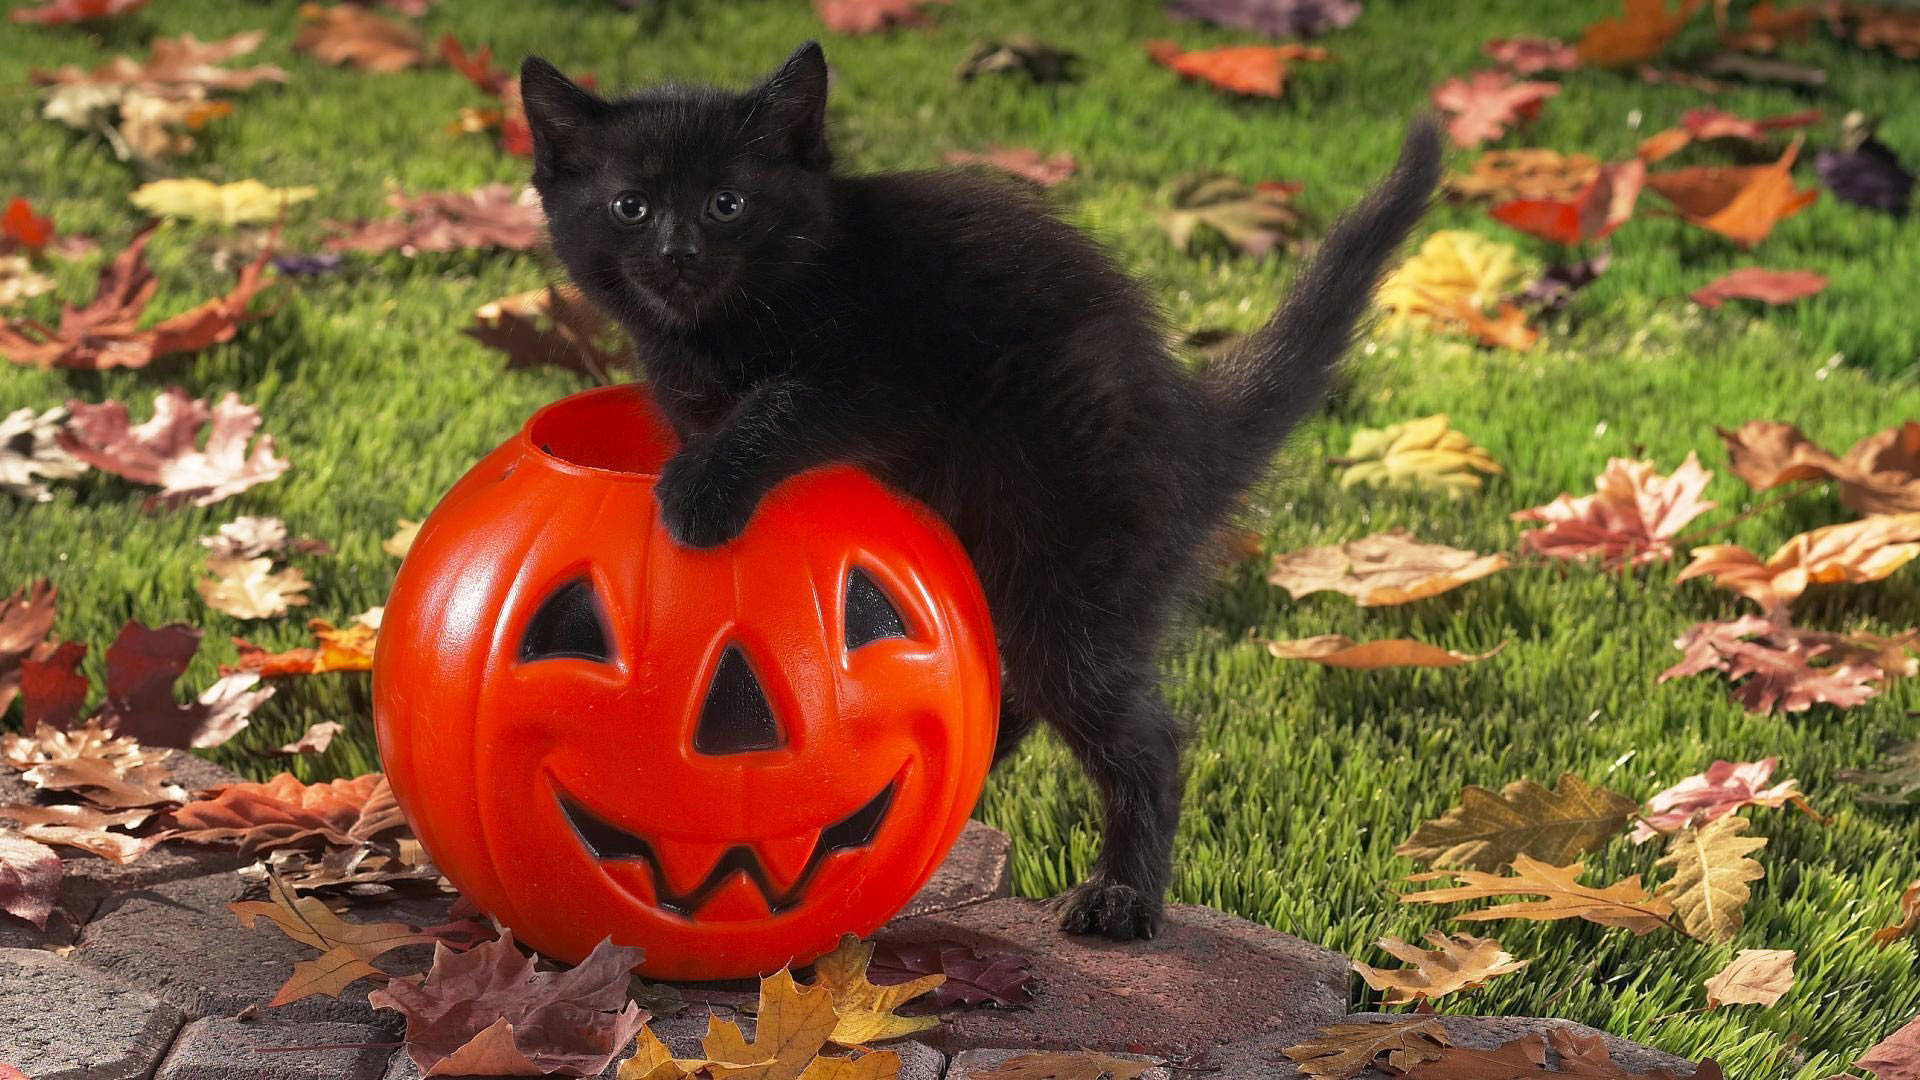 Cat And Pumpkin Cute Halloween Desktop Background